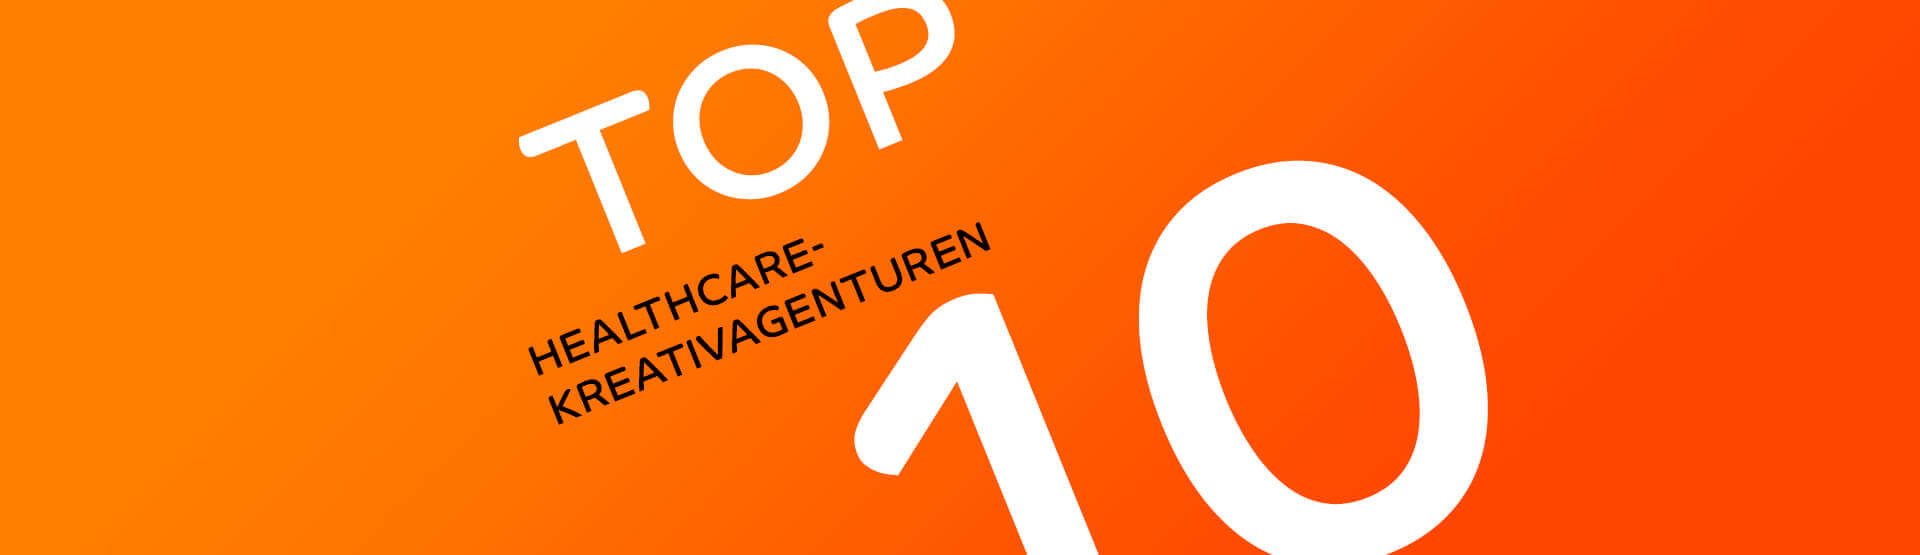 Top10 Heathcare Agenturen Deutschland